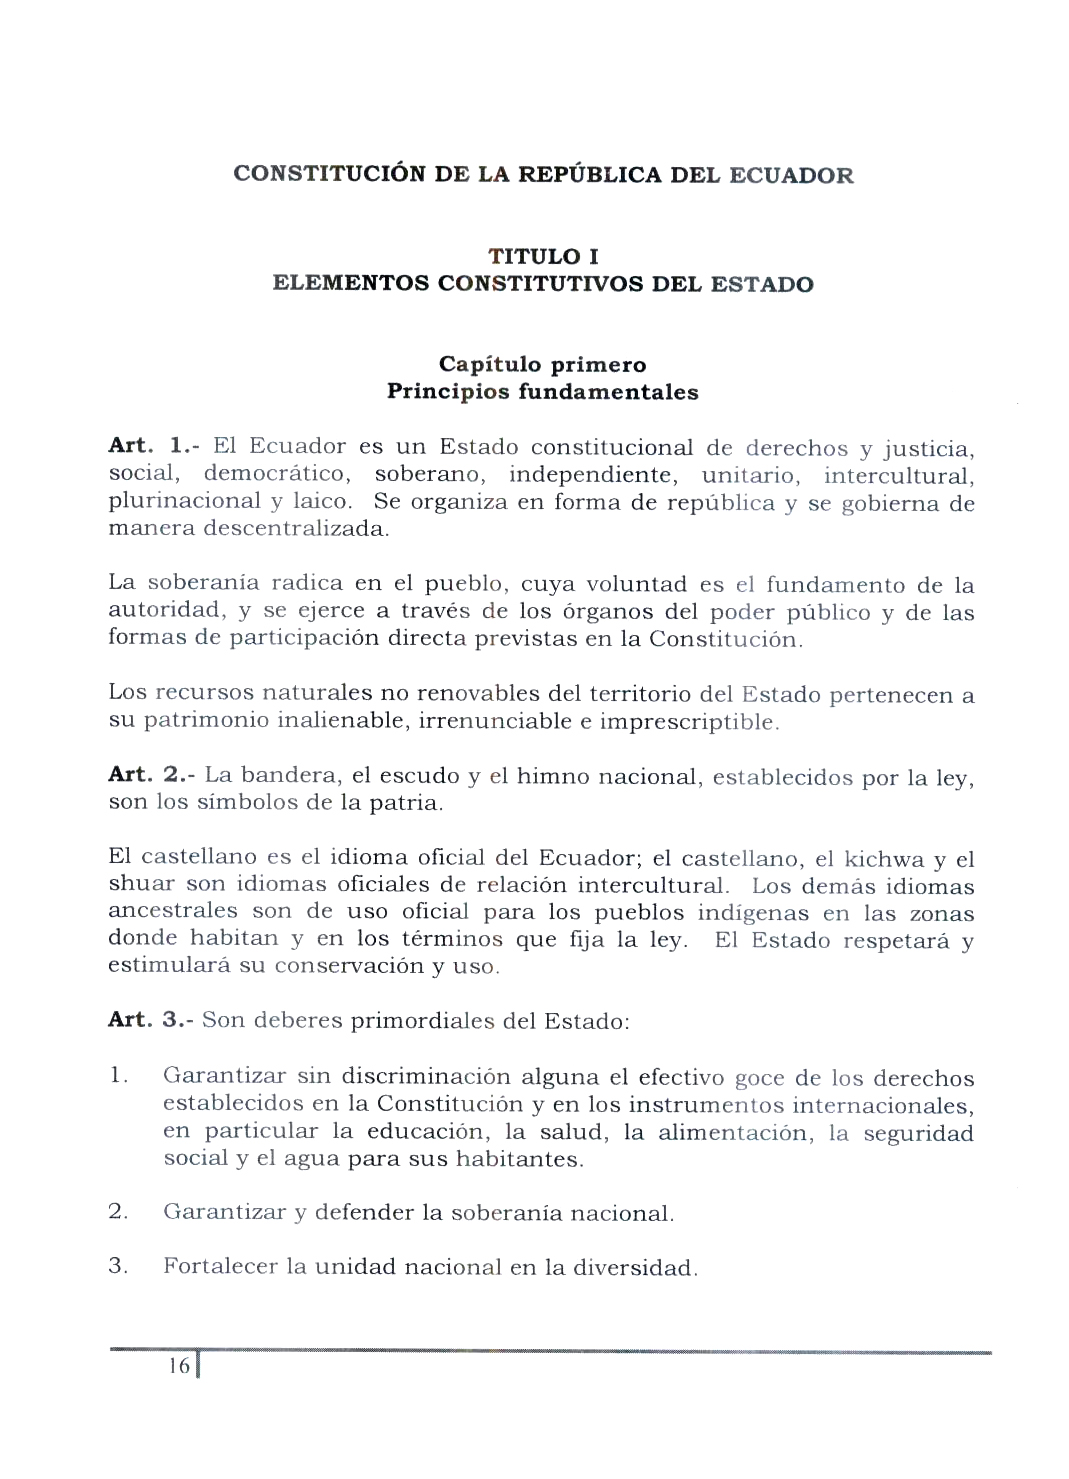 Historia del constitucionalismo ecuatoriano - Wikipedia 